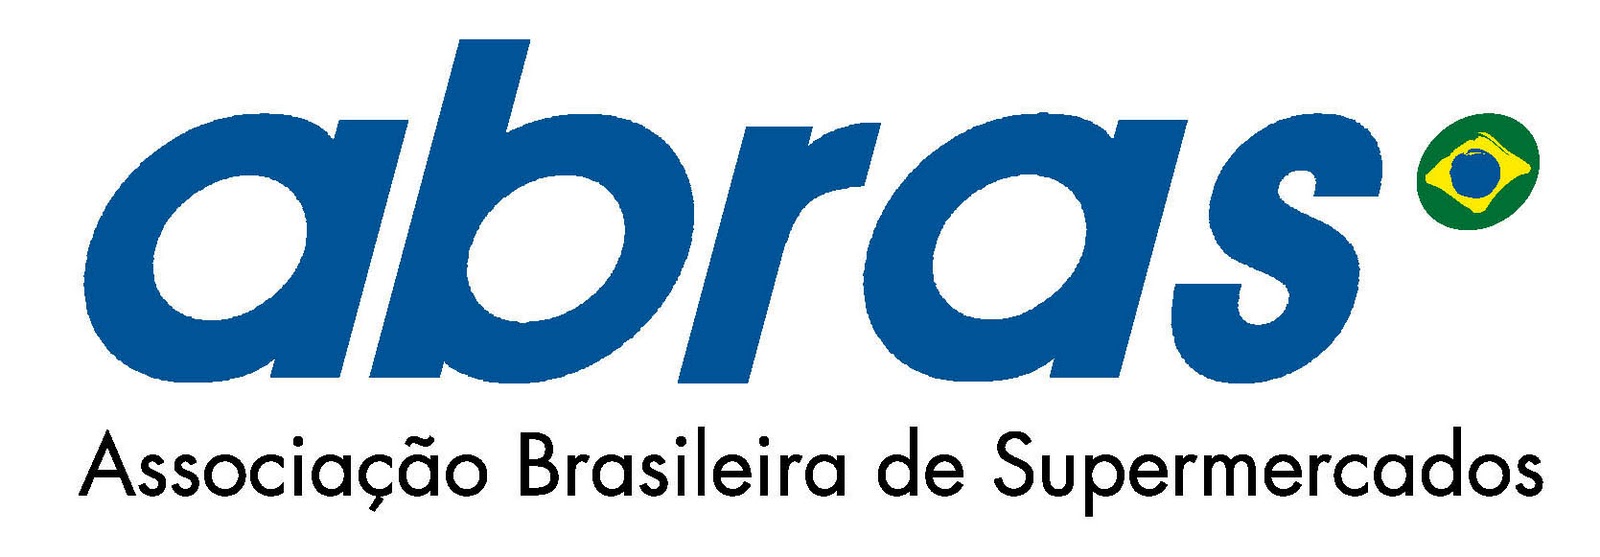 ABRAS Logo photo - 1